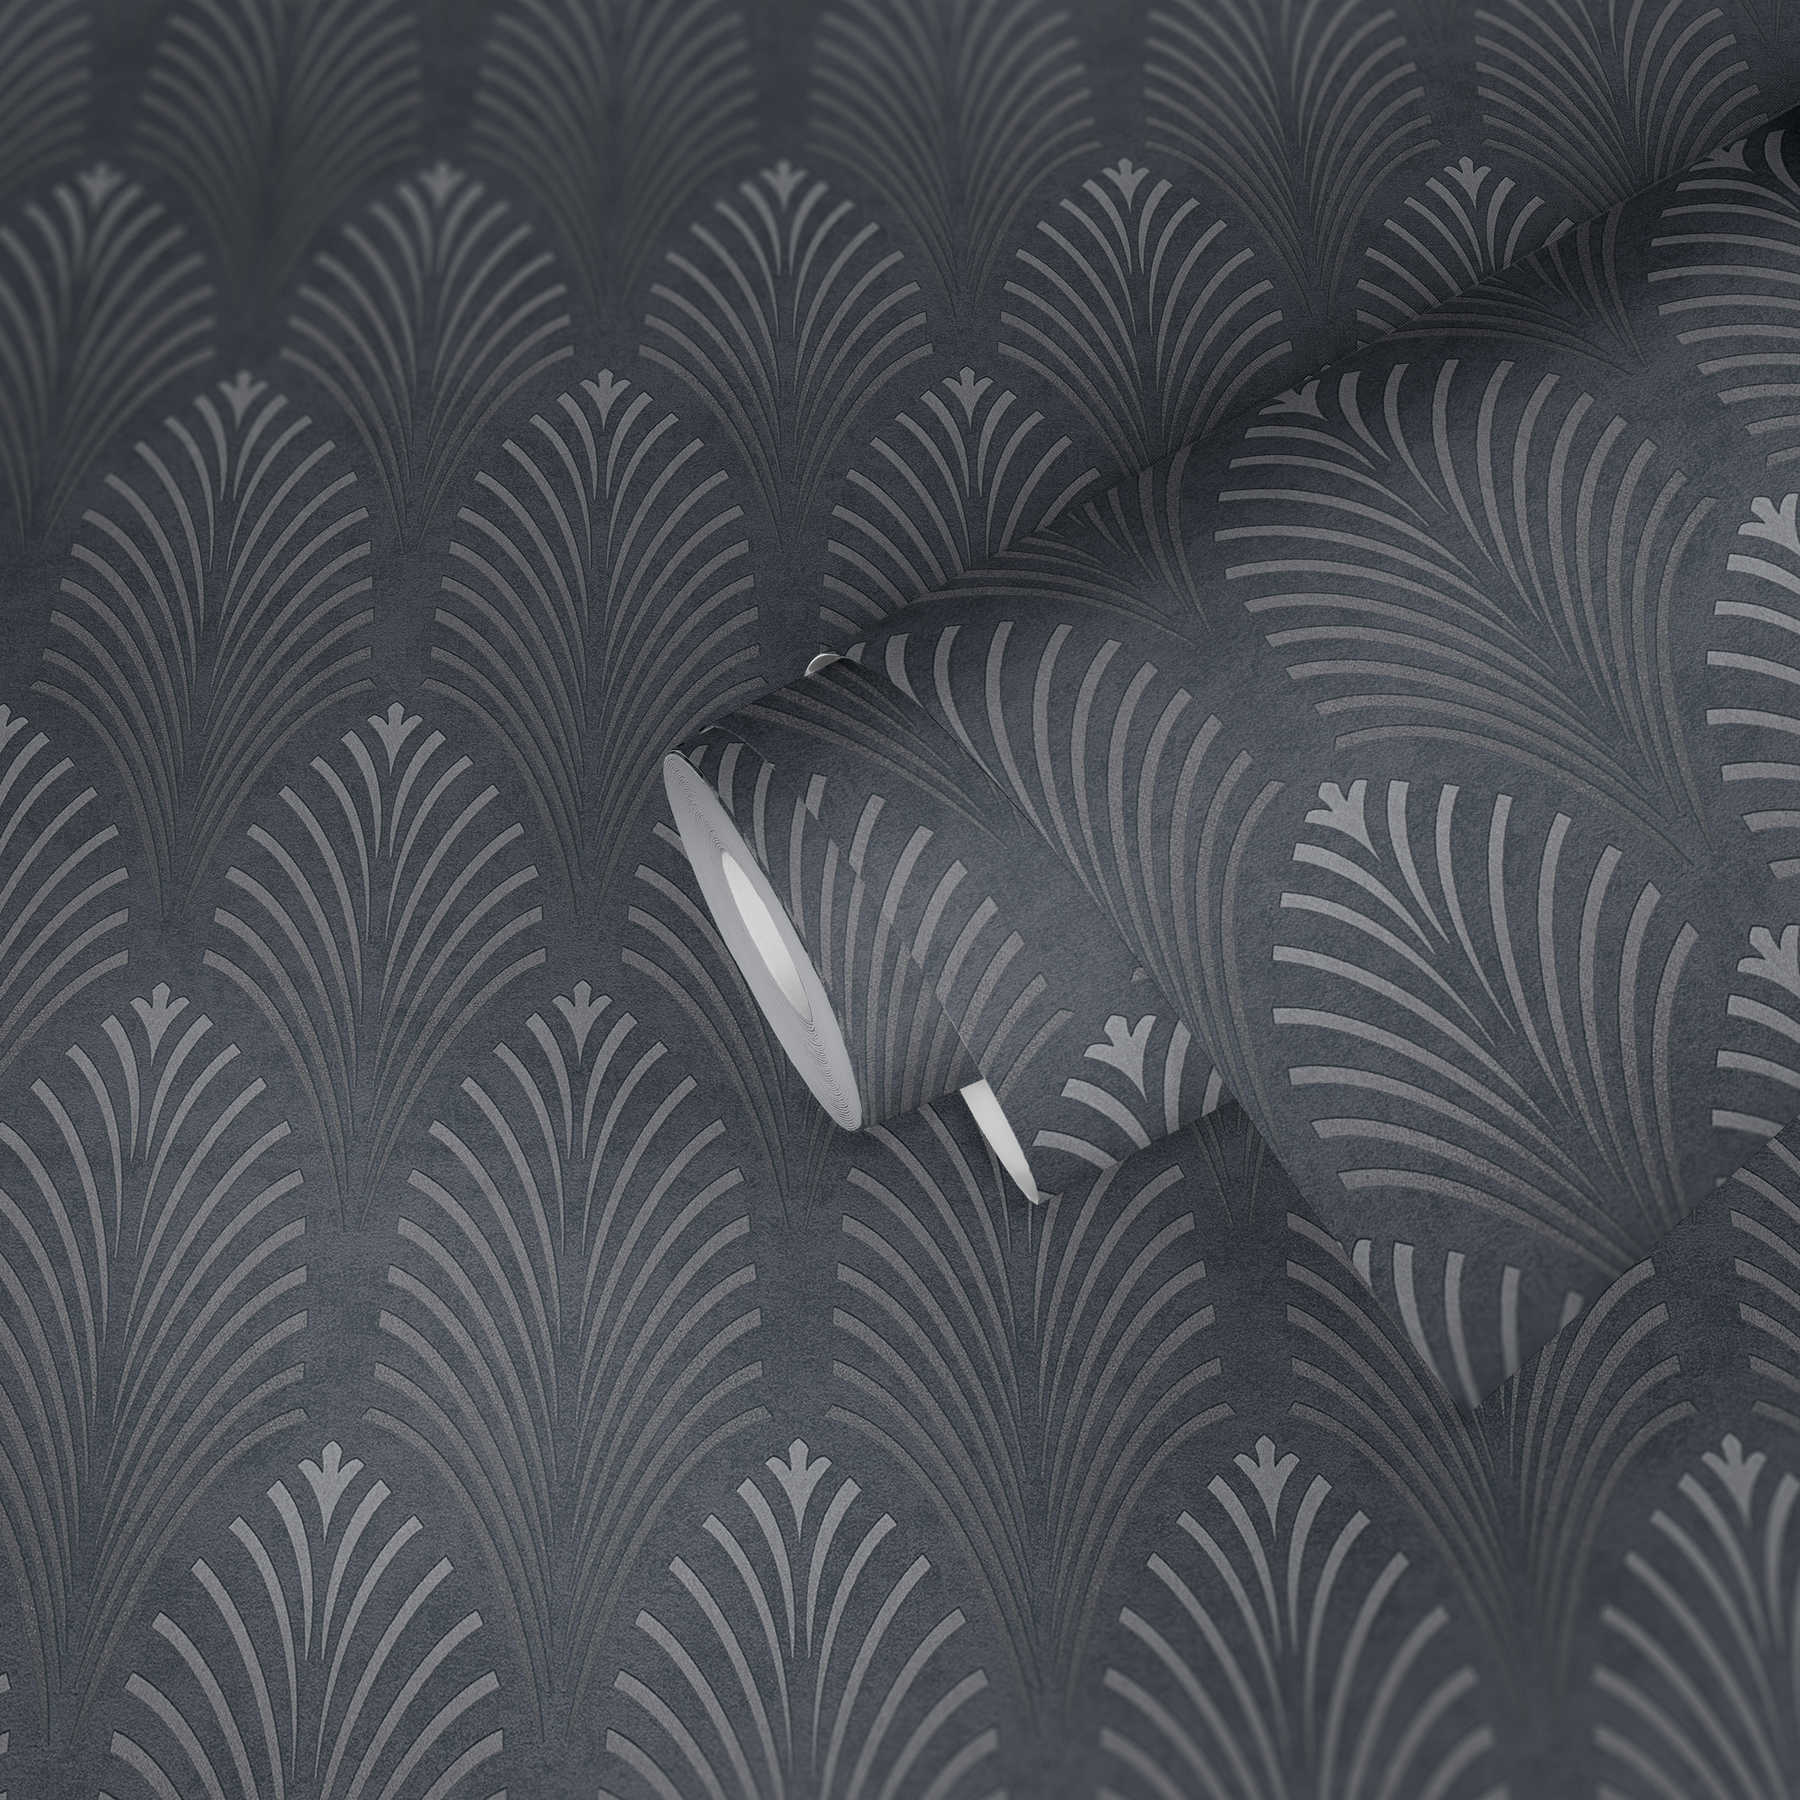             Papier peint rétro style art déco avec motifs géométriques - noir, argent, gris
        